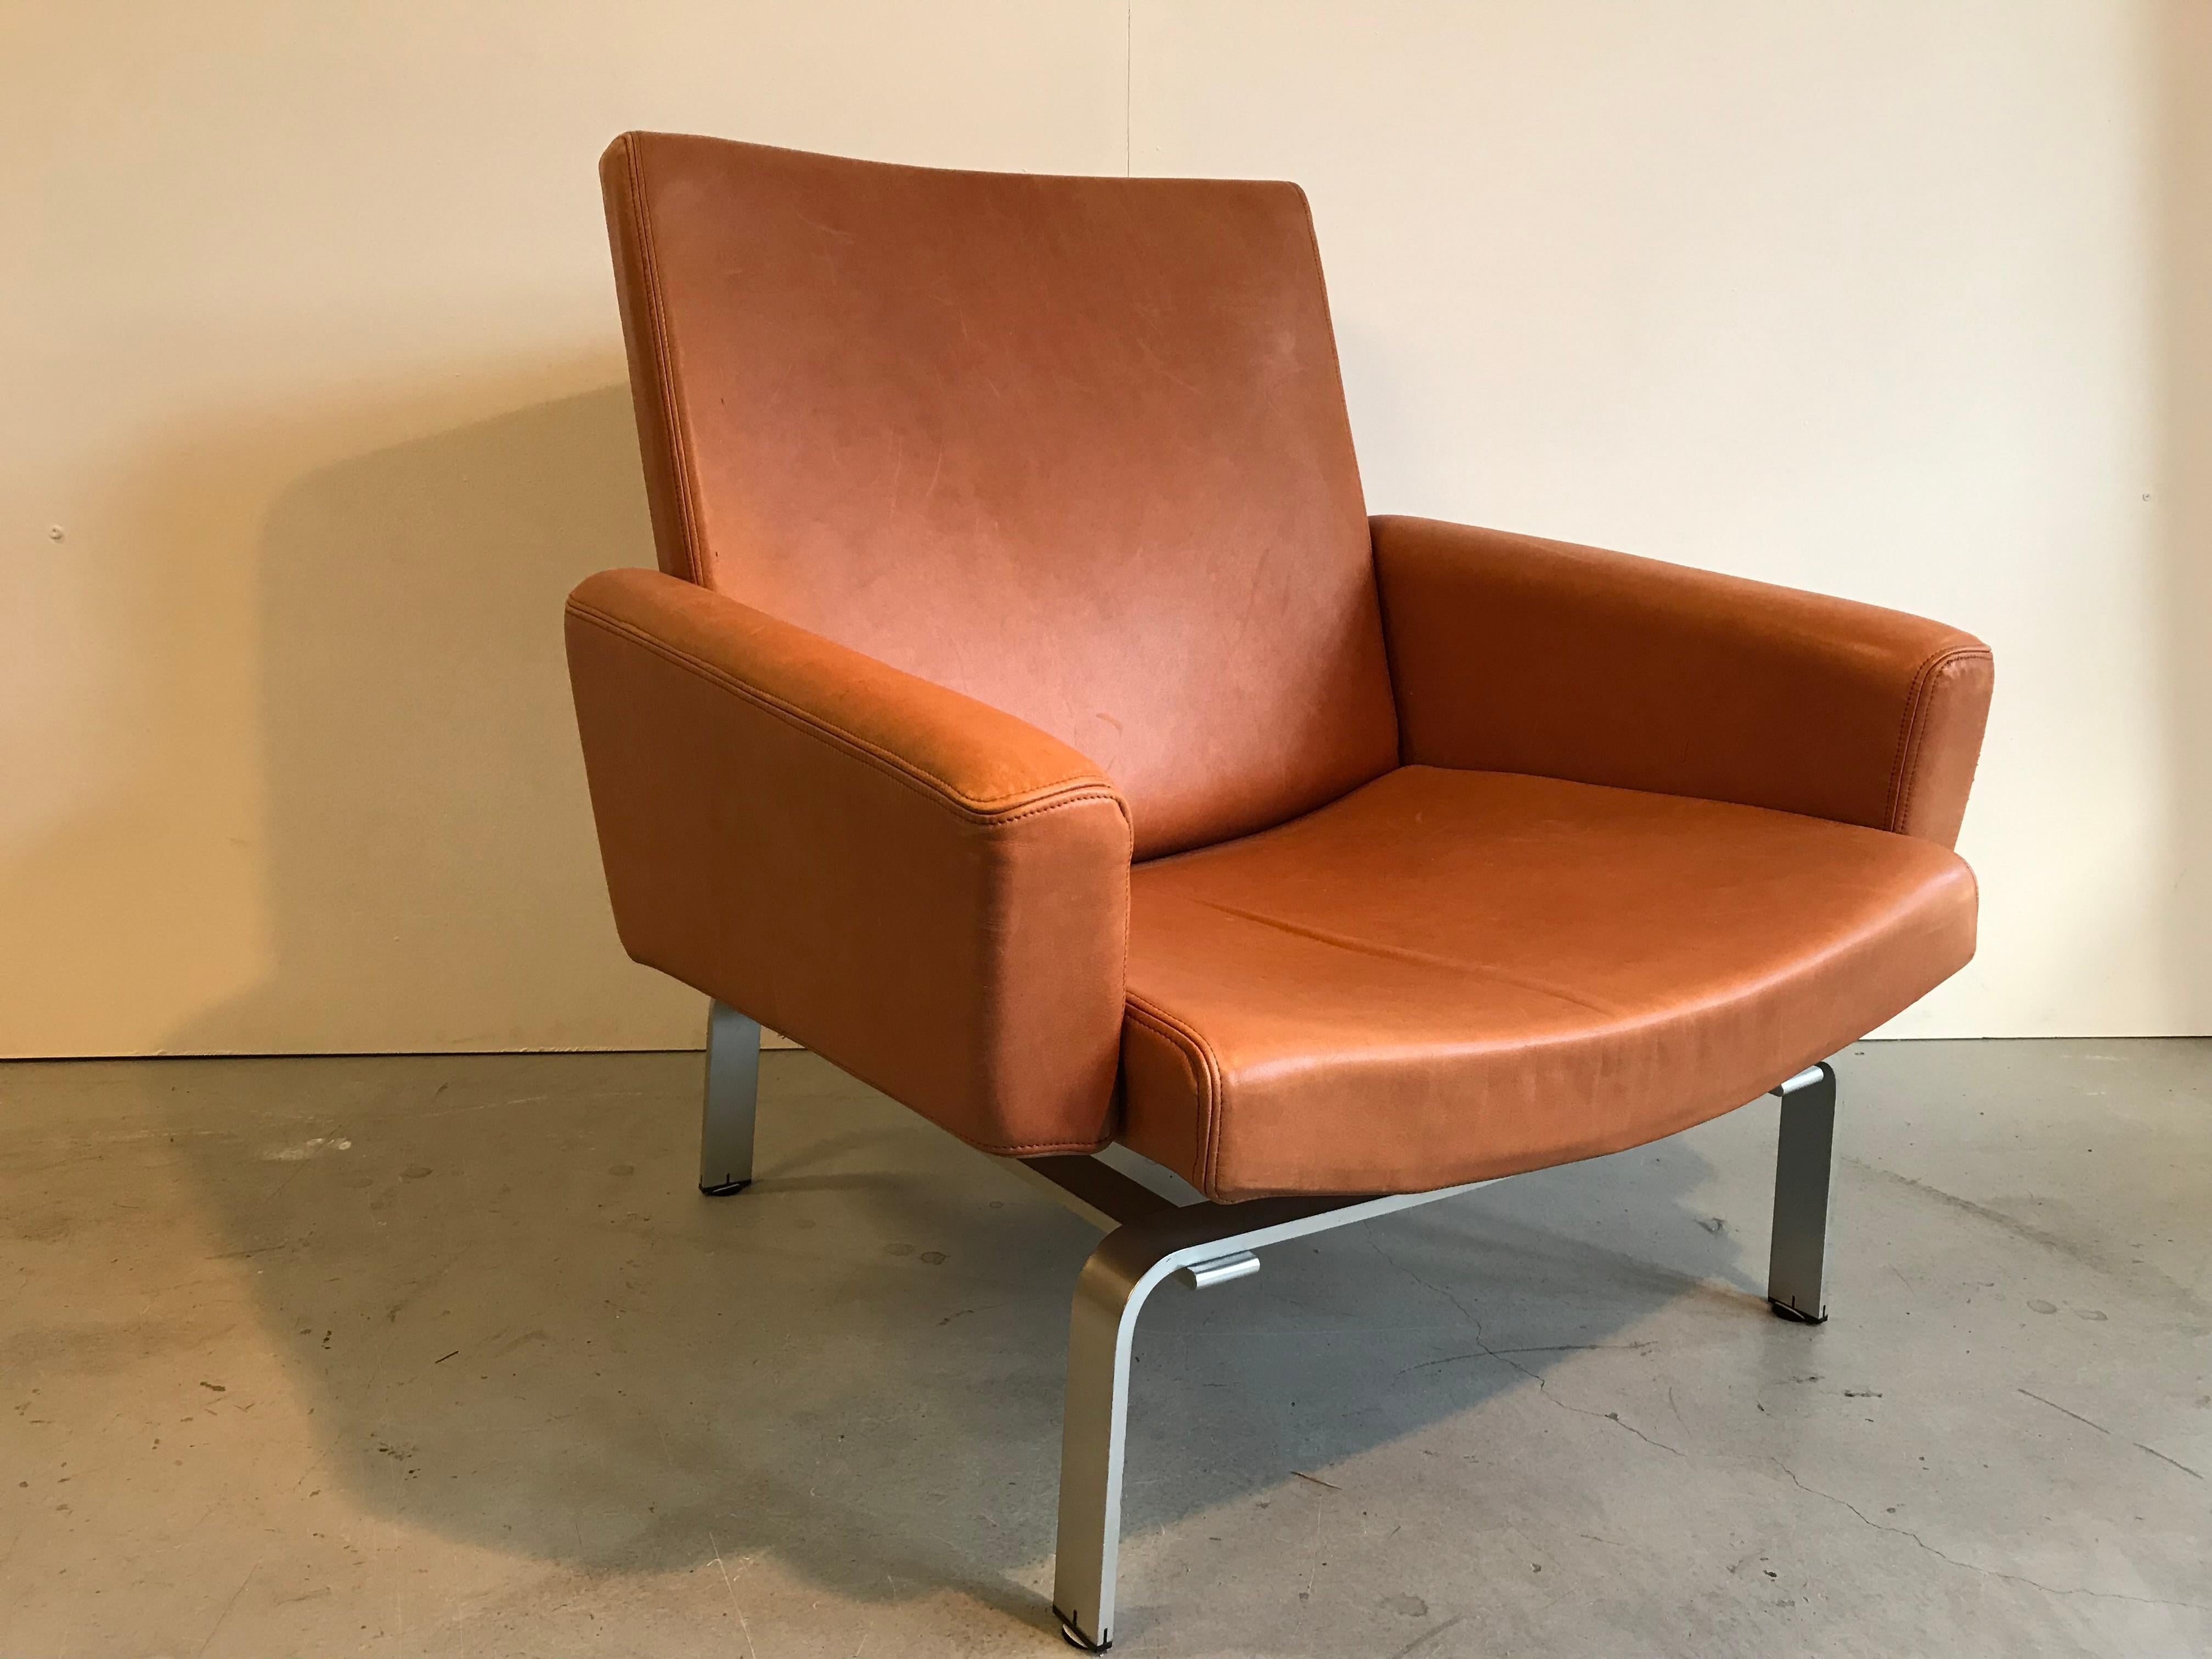 Jorgen Hoj Sessel. 
Entworfen für Niels Vitsoe in den 1960er Jahren. 

Dieser schöne und nicht leicht zu findende Stuhl ist mit Naturleder gepolstert und hat massive Aluminiumfüße. 

Das Leder hat eine tolle Patina, auf einer Armlehne jedoch,